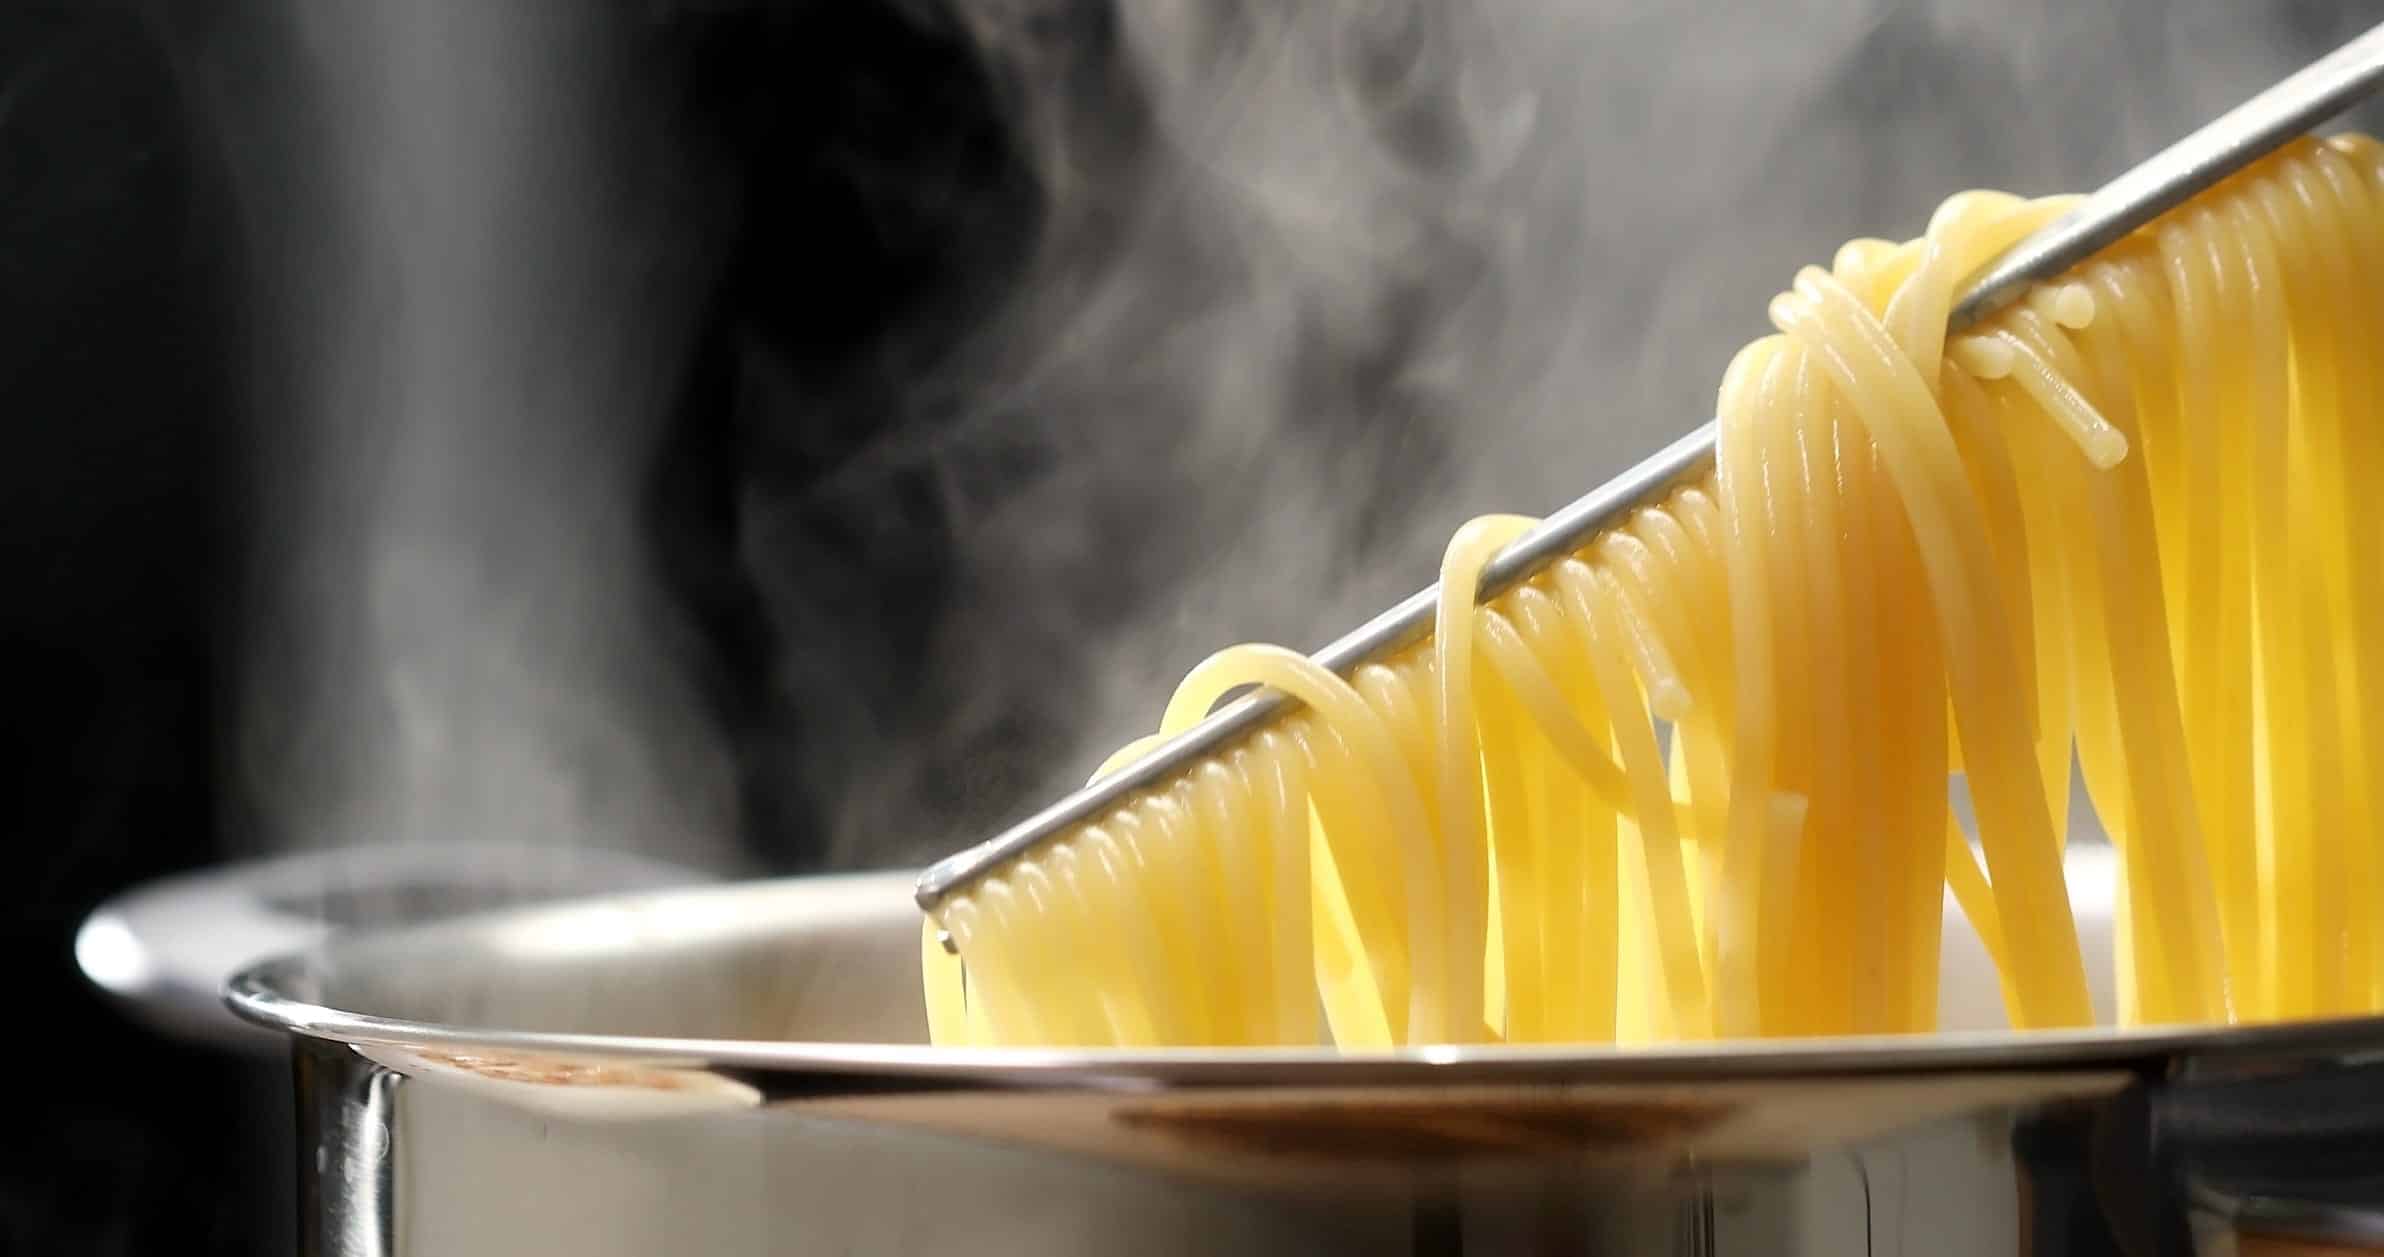 Des spaghettis sont soulevés avec une pince d'une casserole qui émet de la vapeur.